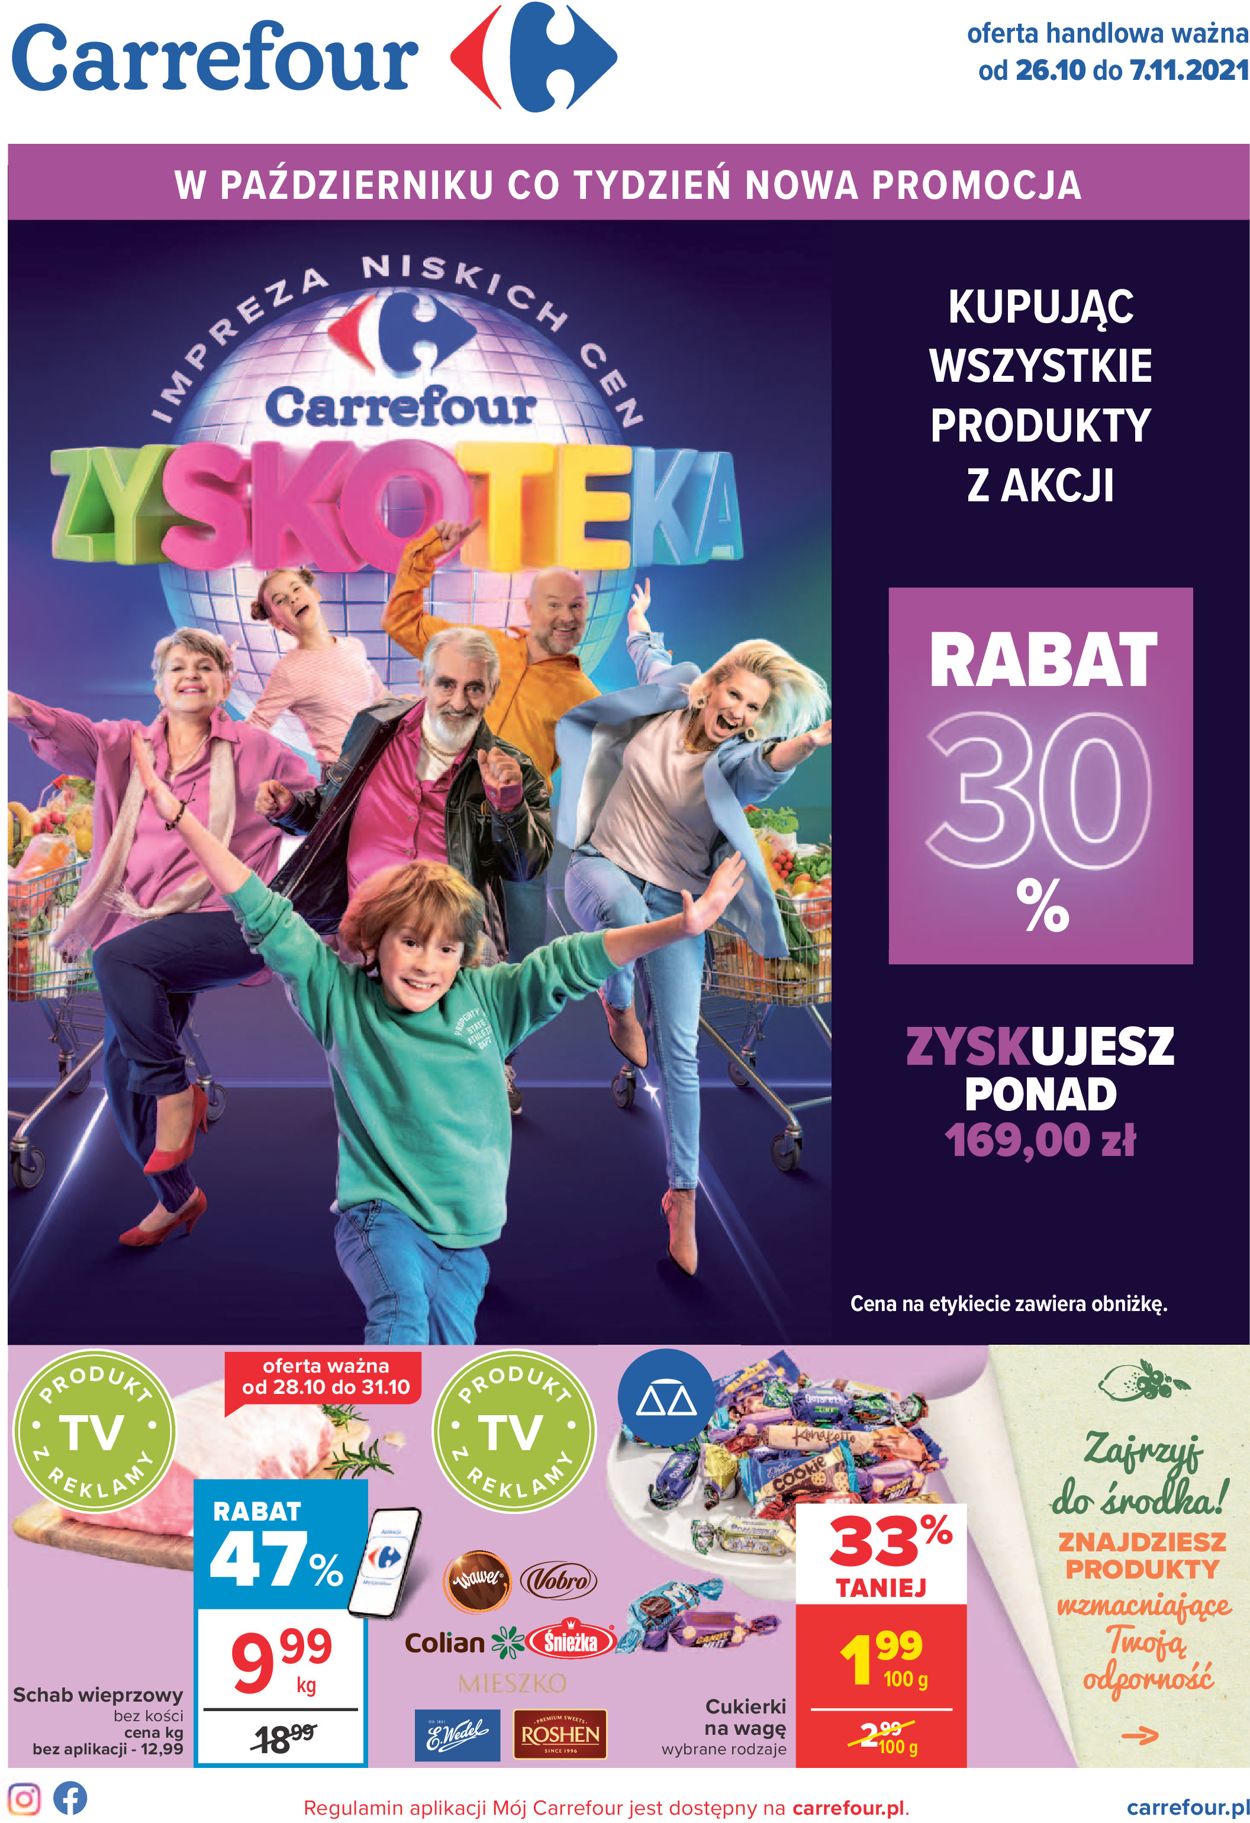 Carrefour Gazetka od 26.10.2021